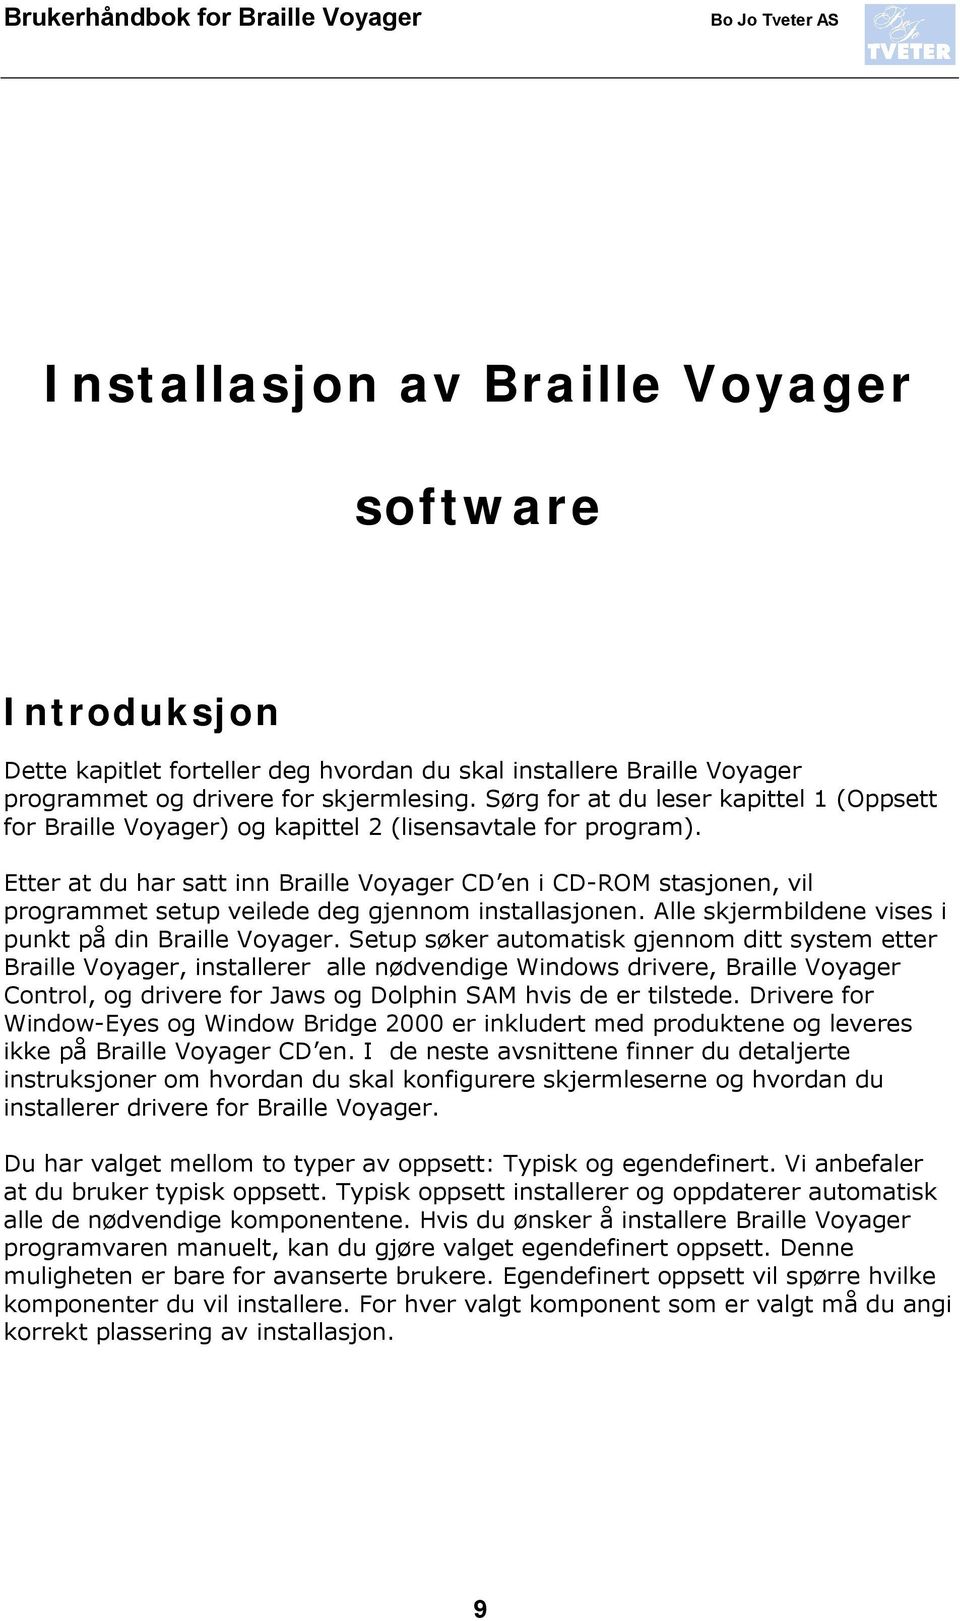 Etter at du har satt inn Braille Voyager CD en i CD-ROM stasjonen, vil programmet setup veilede deg gjennom installasjonen. Alle skjermbildene vises i punkt på din Braille Voyager.